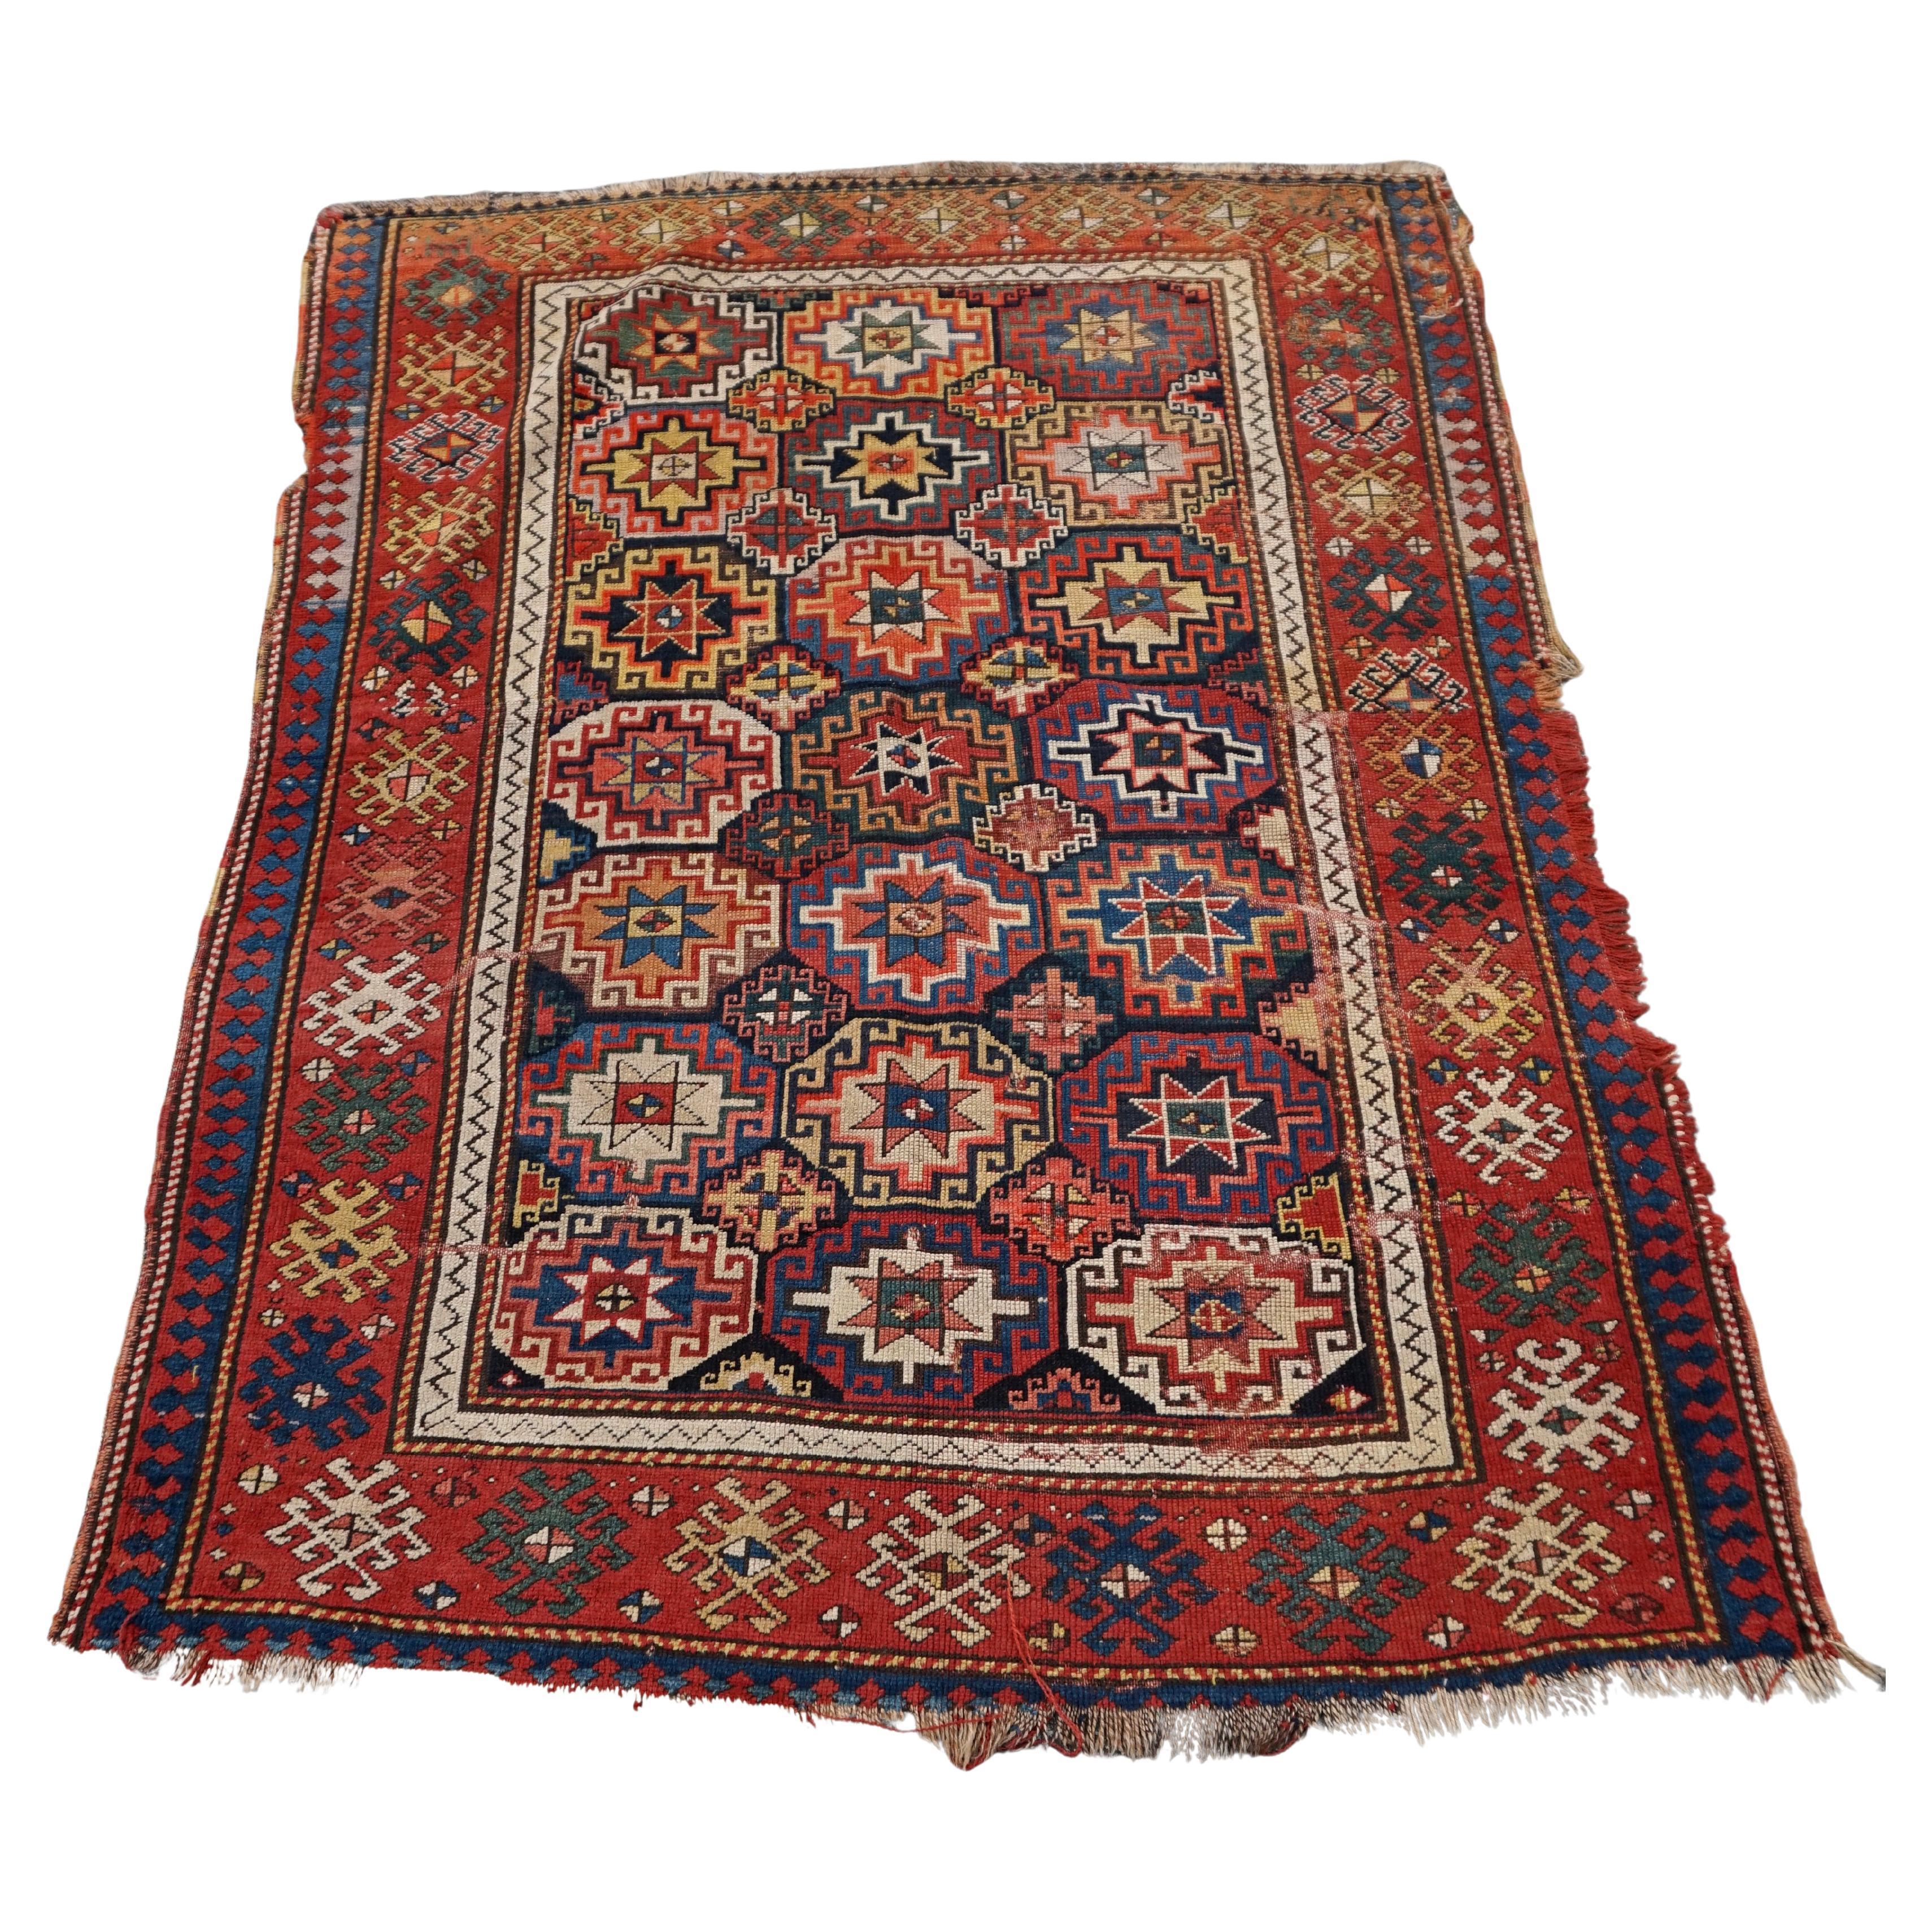 Seltener handgeknüpfter Teppich mit natürlichen Farbstoffen des 19. Jahrhunderts, kaukasisches Kaukasisches Stammeskunst-Stil